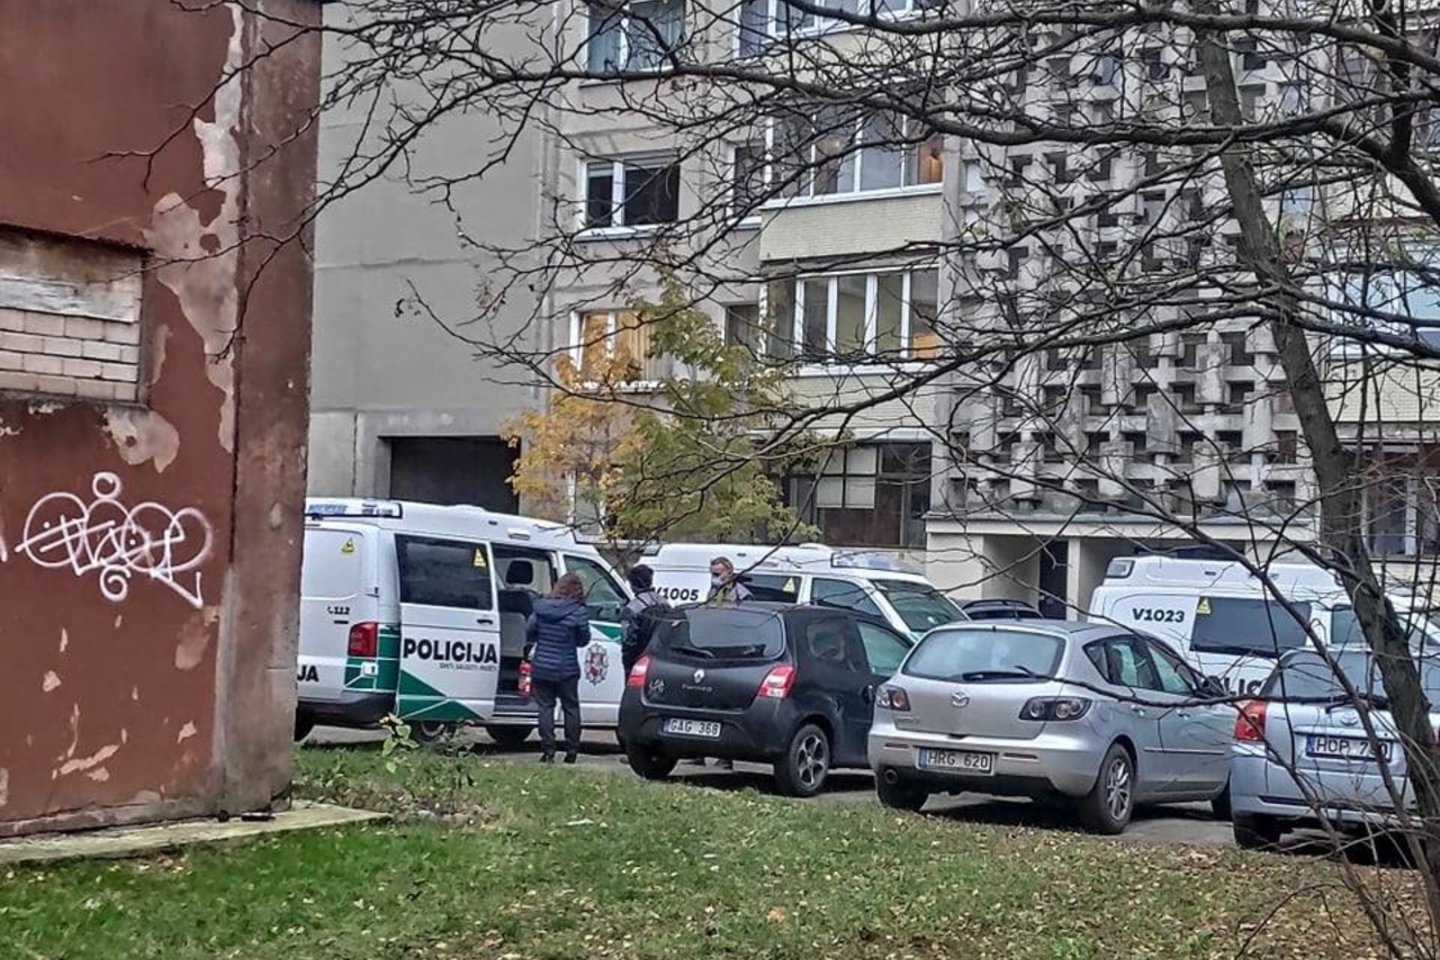  Vilniuje rasta nužudyta moteris, į įvykio vietą susirinko gausios pareigūnų pajėgos.<br> N.Surgailytės nuotr.